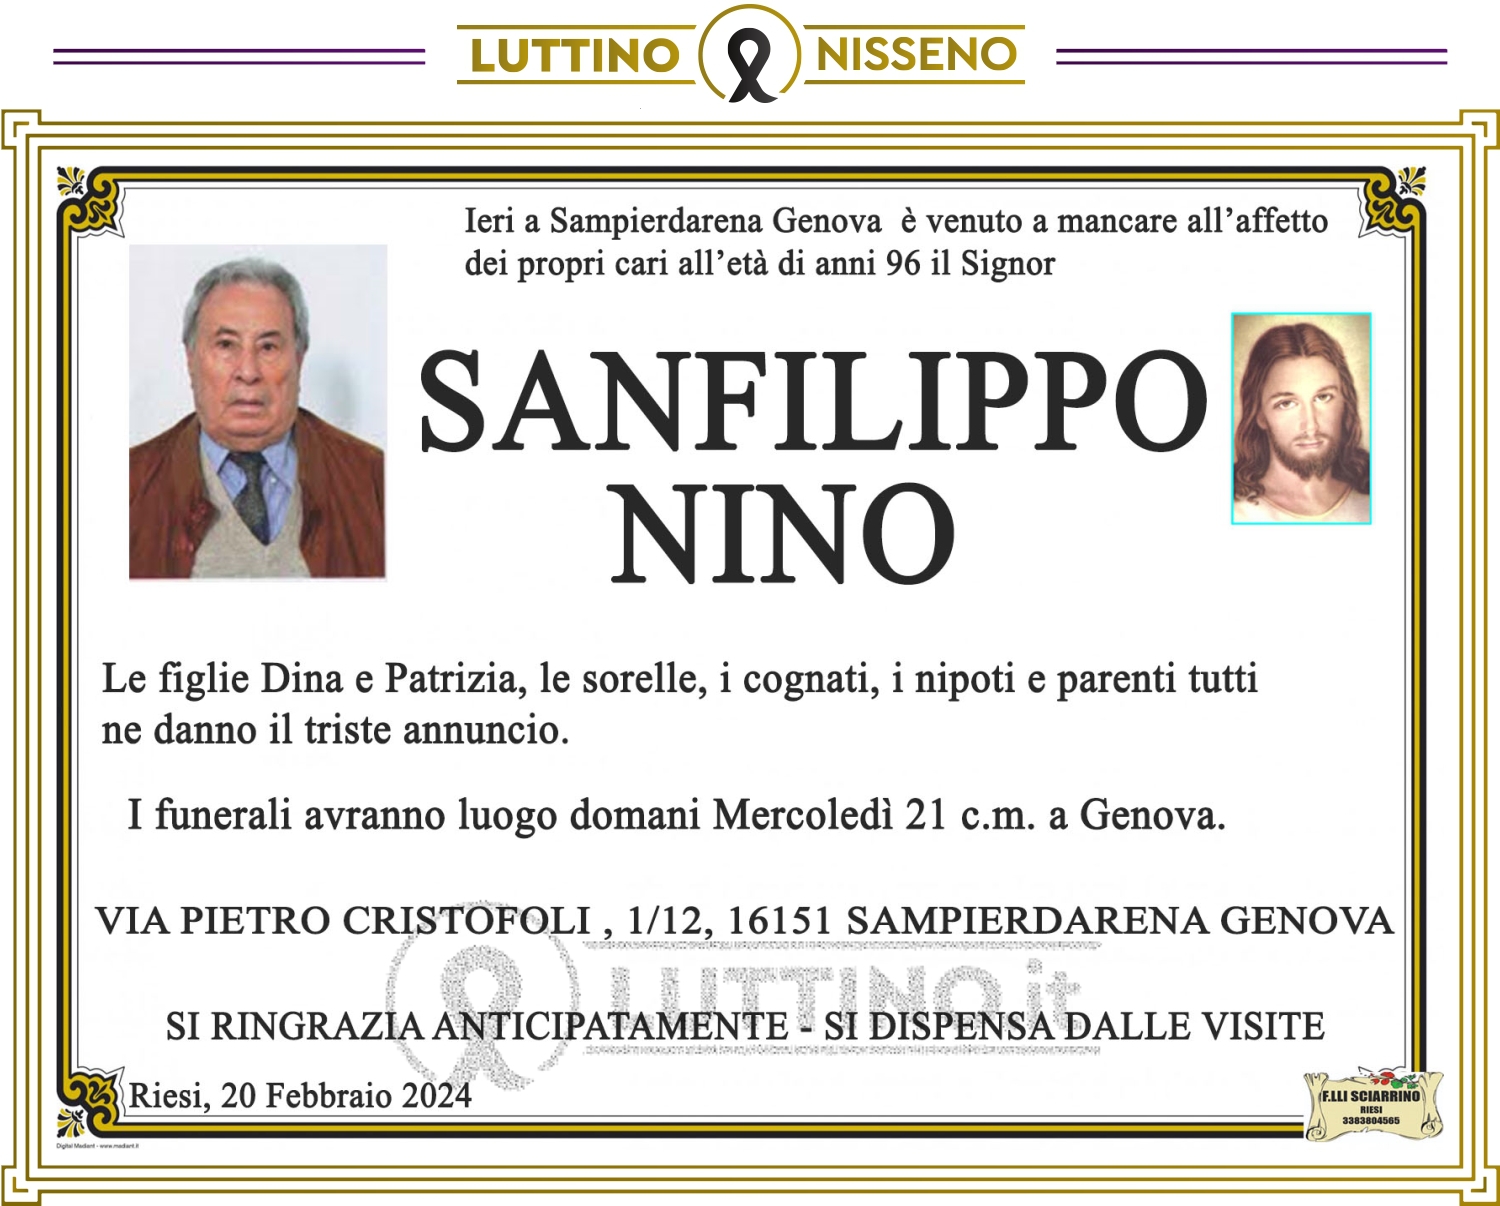 Nino Sanfilippo